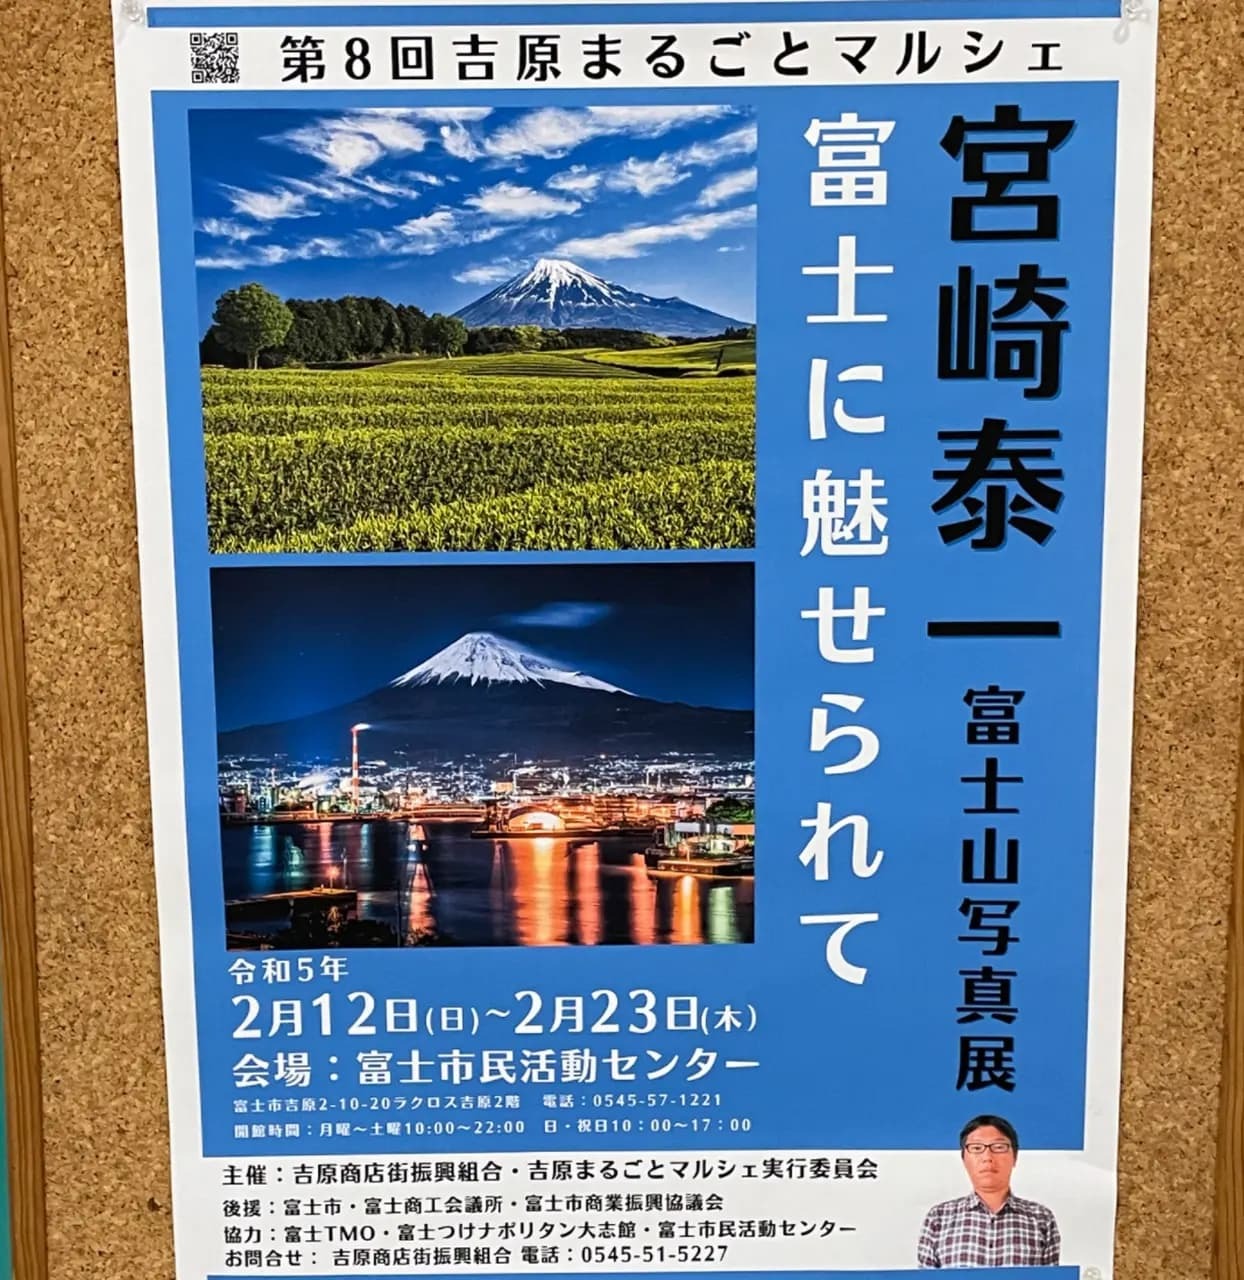 宮崎泰一富士山写真展「富士に魅せられて」